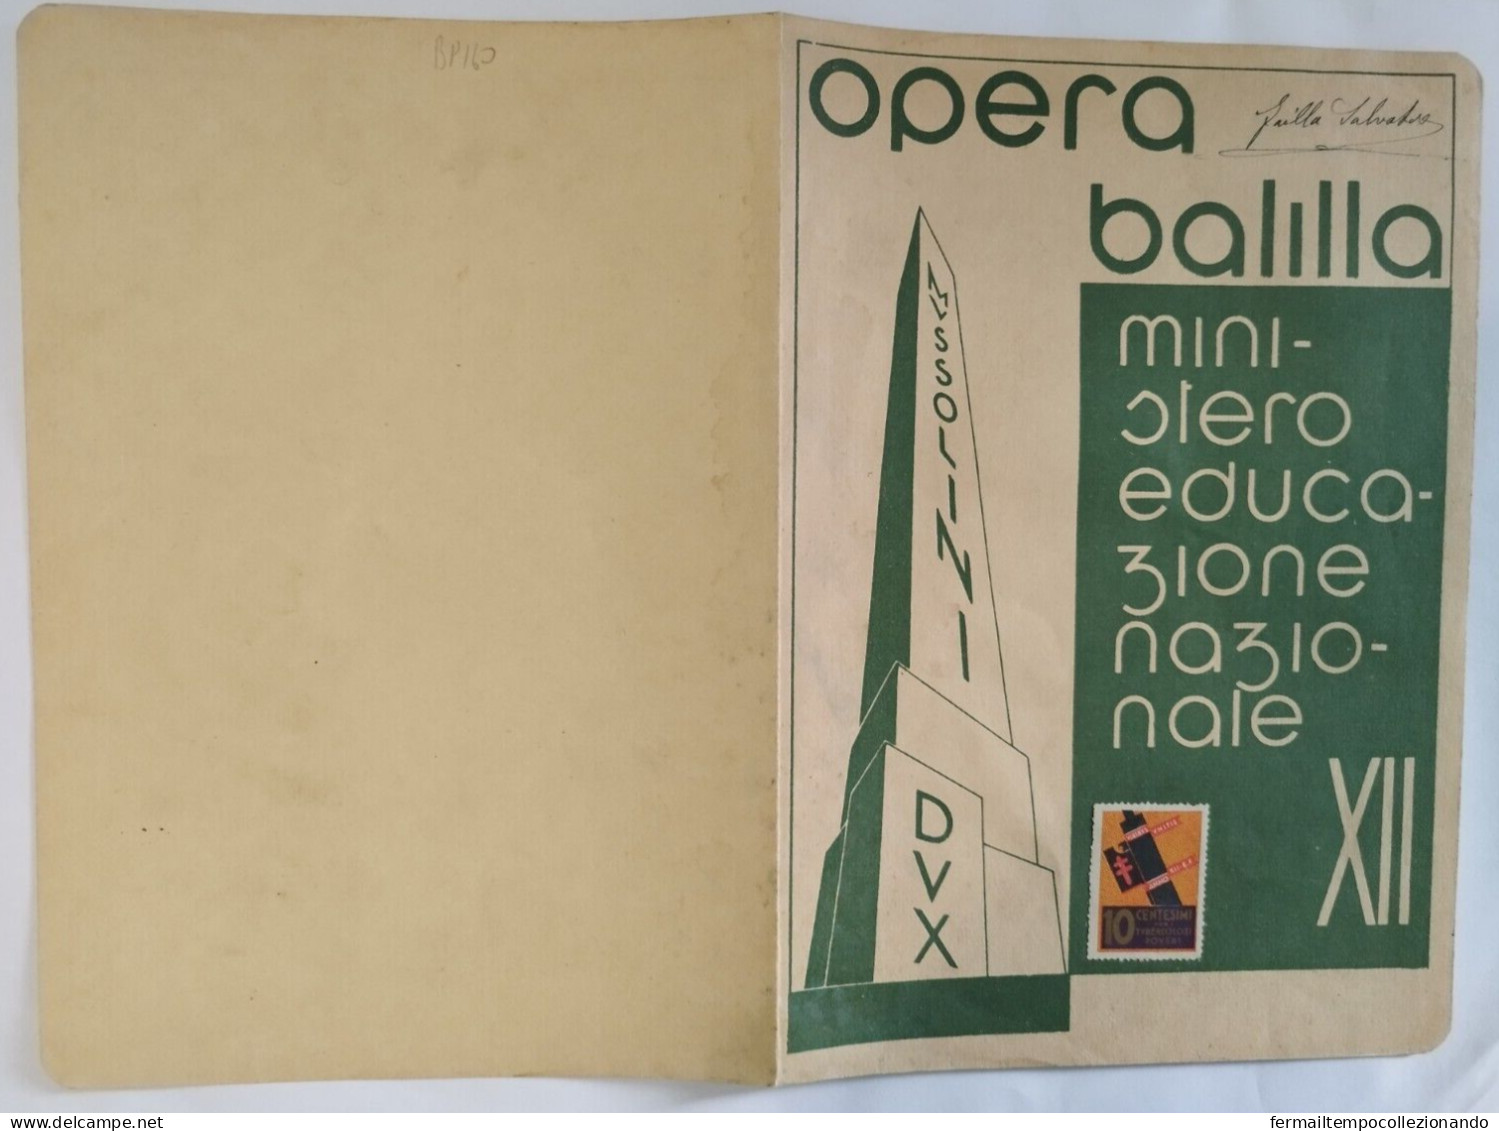 Bp160 Pagella Fascista Regno D'italia Opera Balilla Vizzini Catania 1934 - Diploma & School Reports